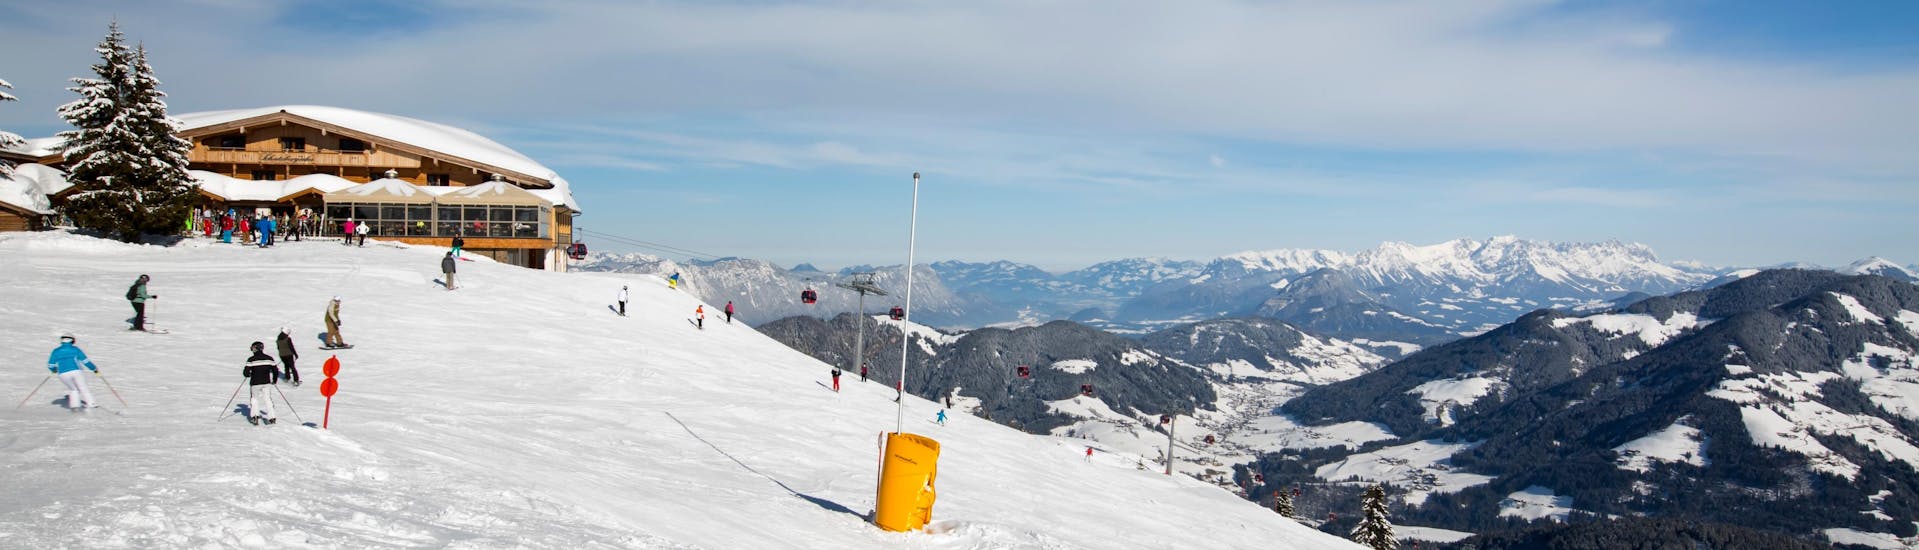 Adultes et enfants skiant dans la station de ski de Wildschonau.